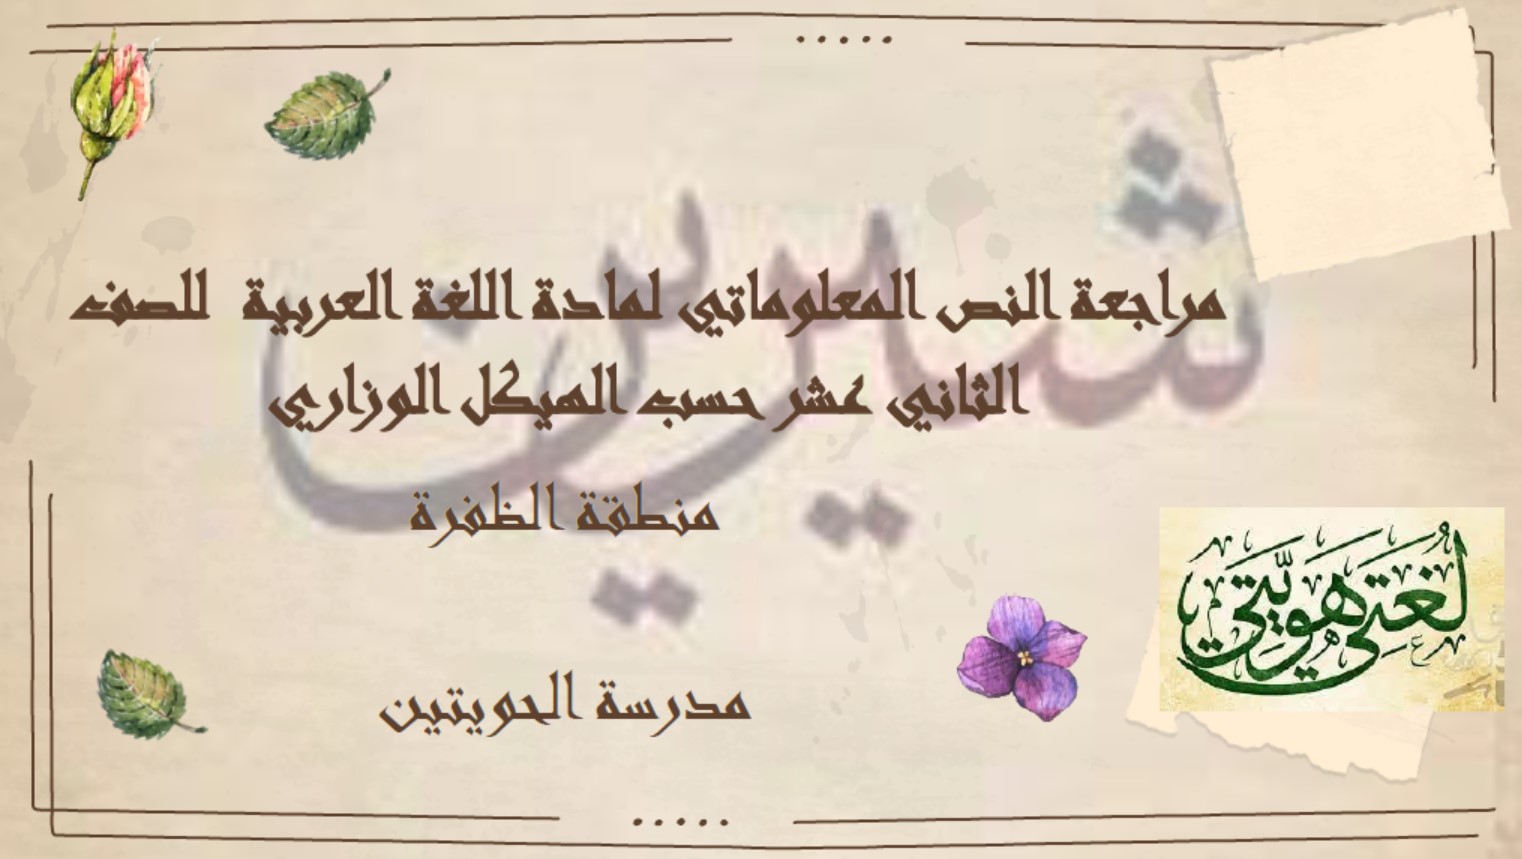 مراجعة النص المعلوماتي حسب الهيكل اللغة العربية الصف الثاني عشر